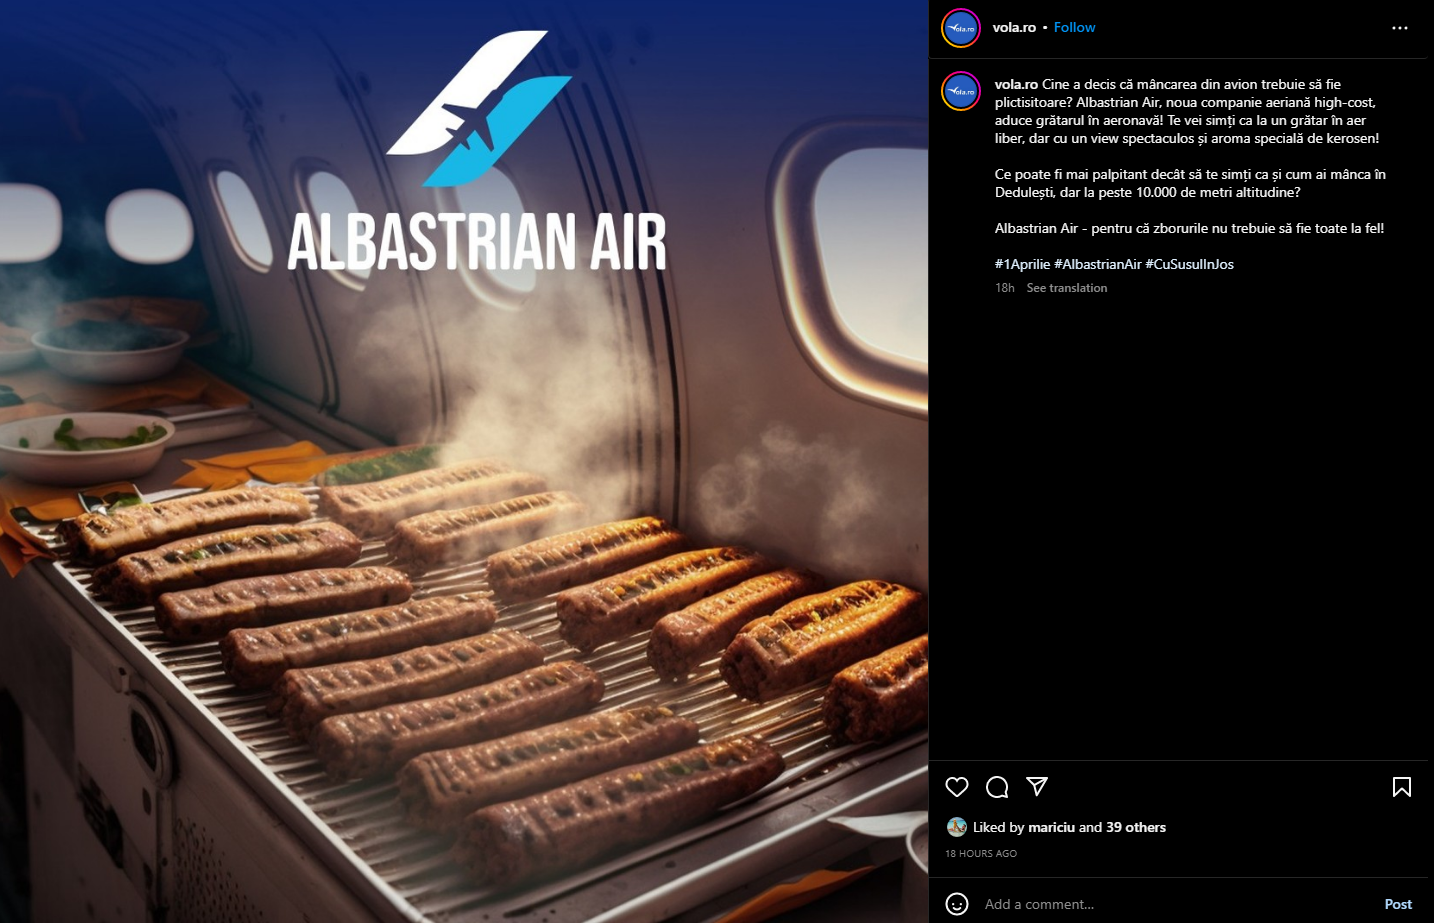 Cine a decis că mâncarea din avion trebuie să fie plictisitoare? Albastrian Air, noua companie aeriană high-cost, aduce grătarul în aeronavă! Te vei simți ca la un grătar în aer liber, dar cu un view spectaculos și aroma specială de kerosen! Ce poate fi mai palpitant decât să te simți ca și cum ai mânca în Dedulești, dar la peste 10.000 de metri altitudine?